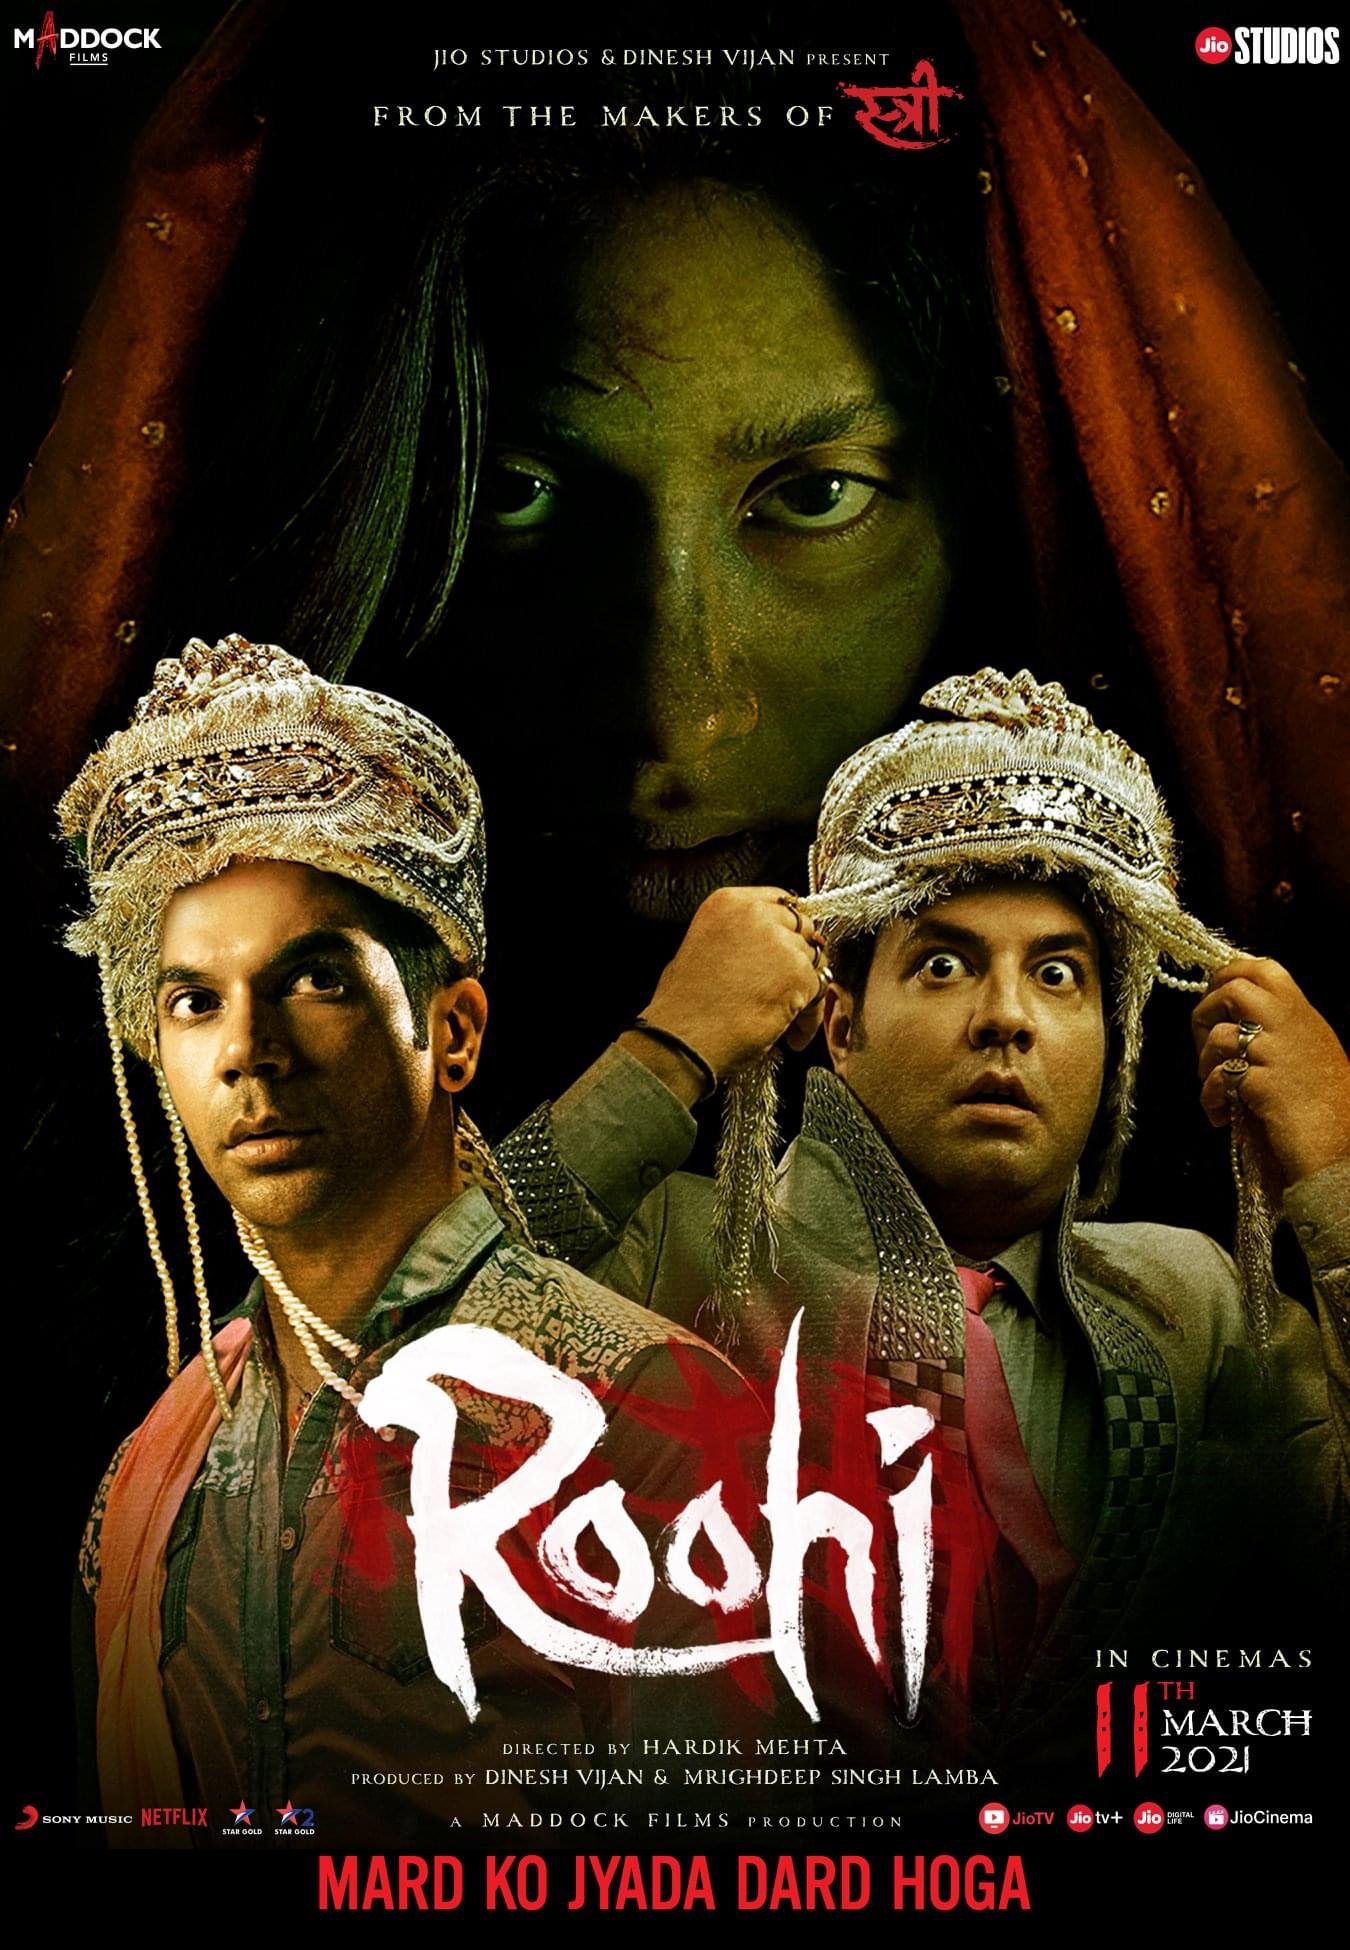 ถกสนั่นโซเชียล! Roohi หนังอินเดียเข้าใหม่ อ่านไงให้ไม่ให้ติดเรต